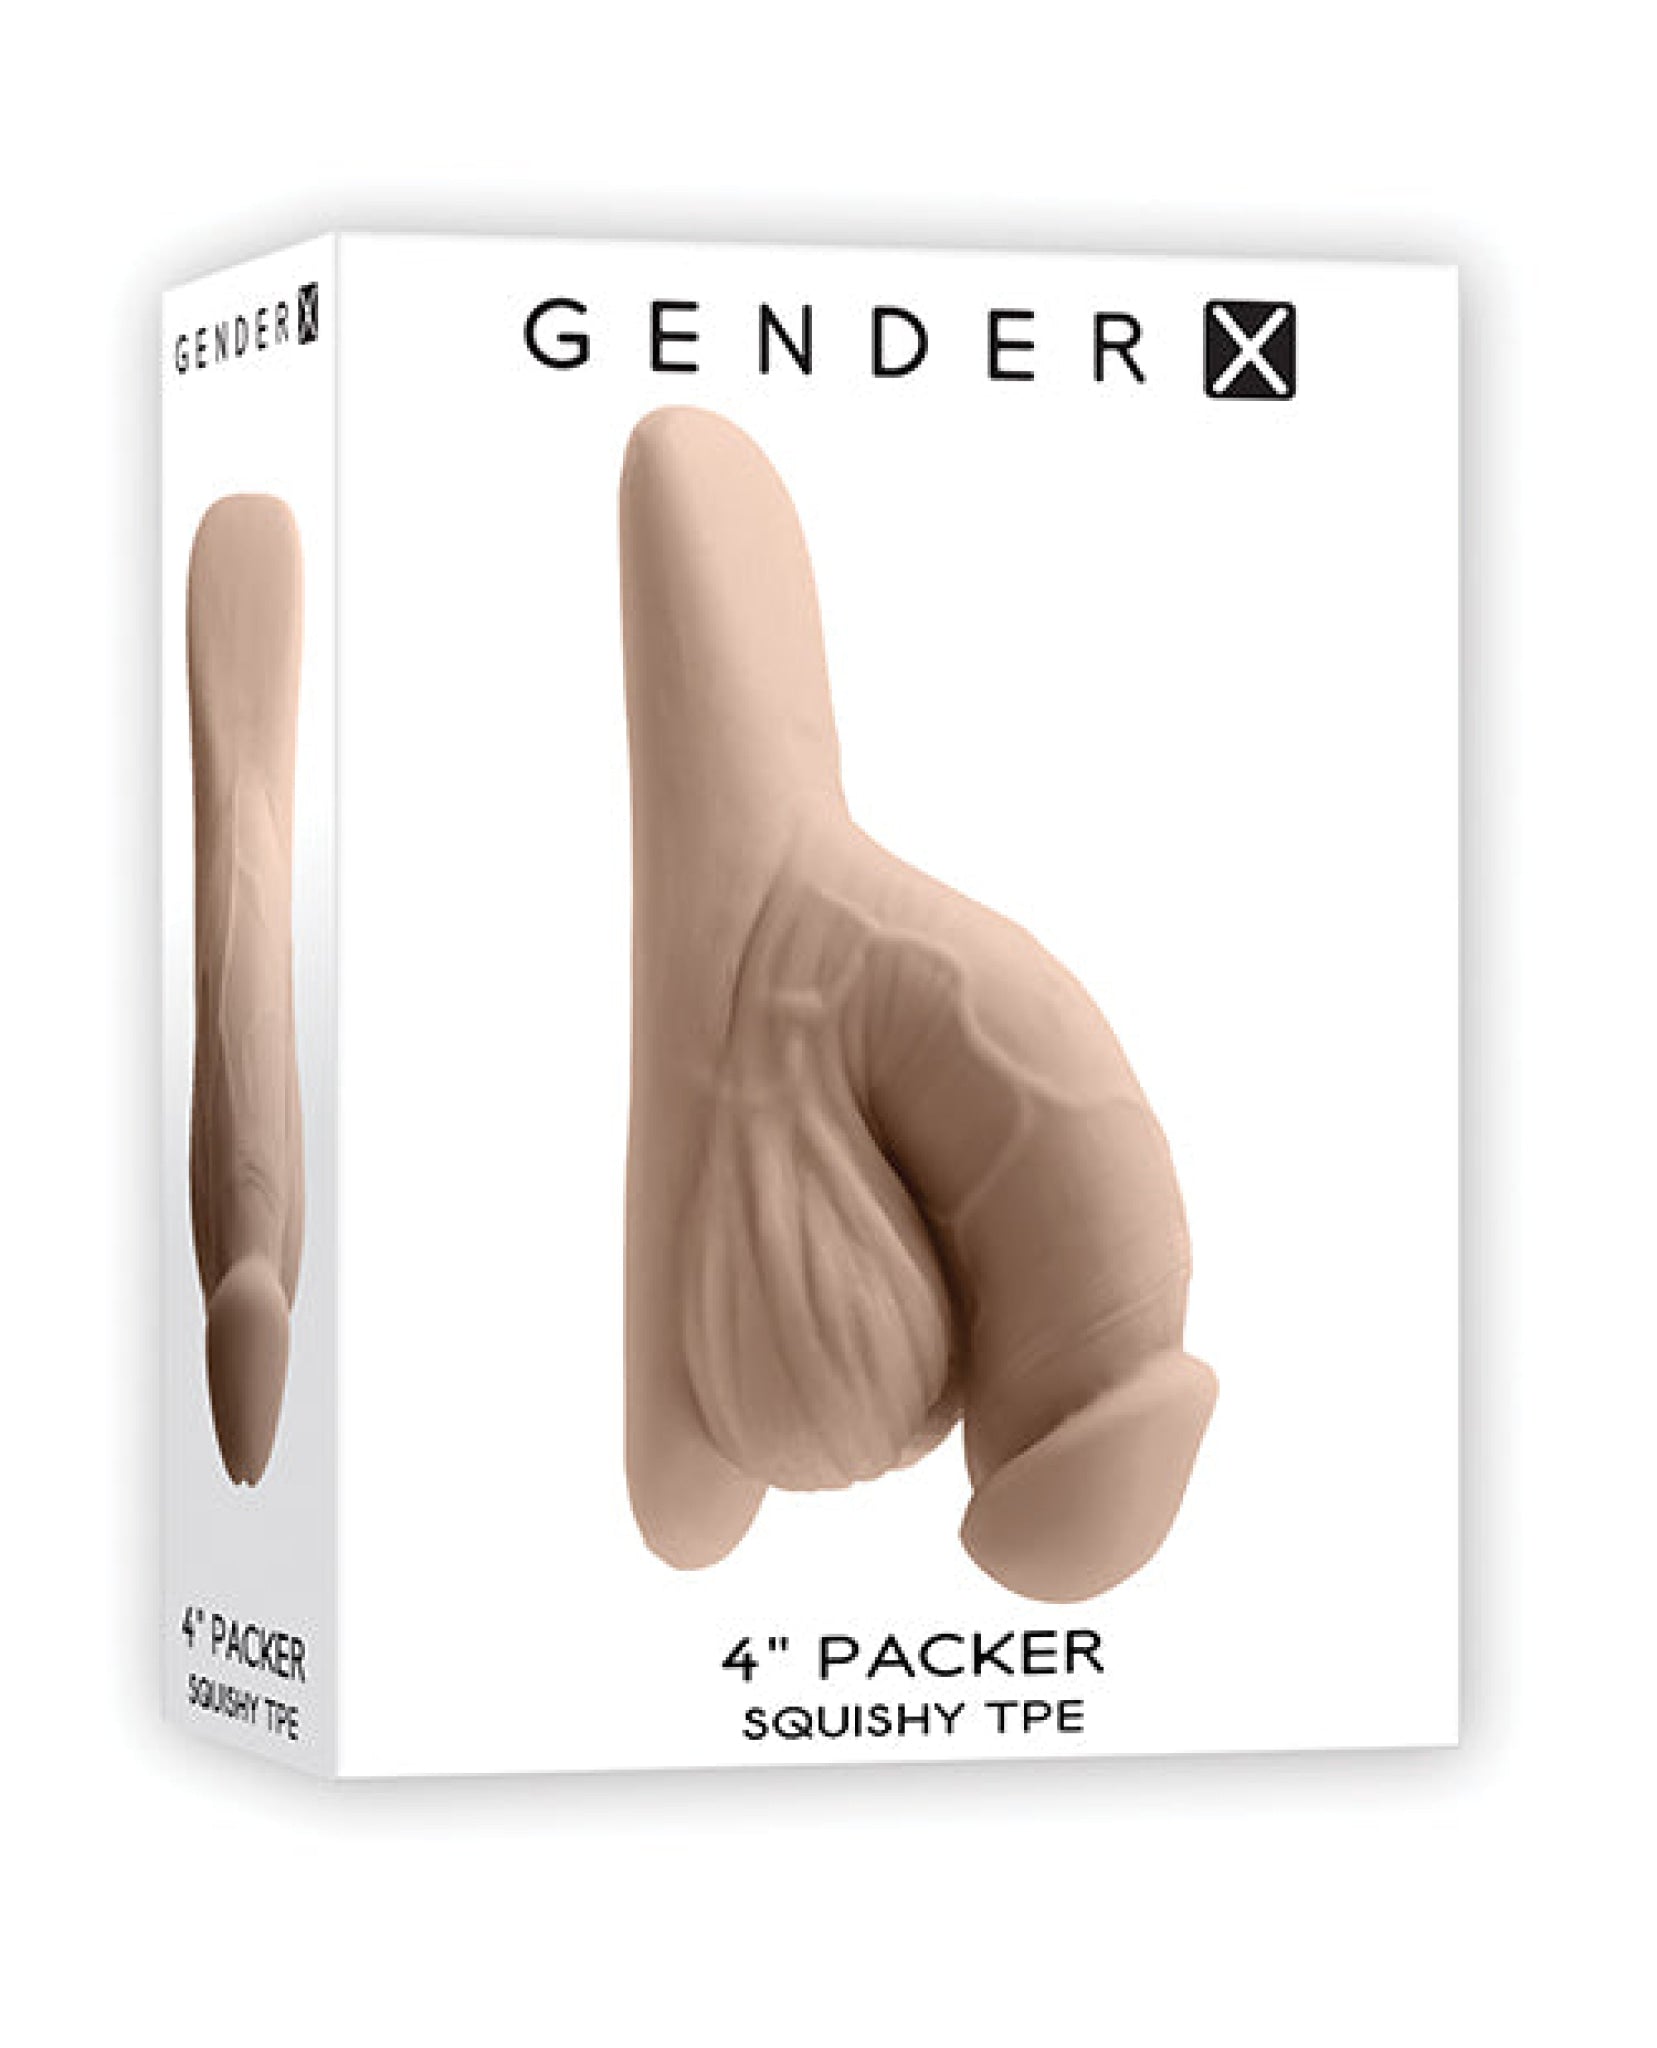 Gender X 4" Packer Gender X